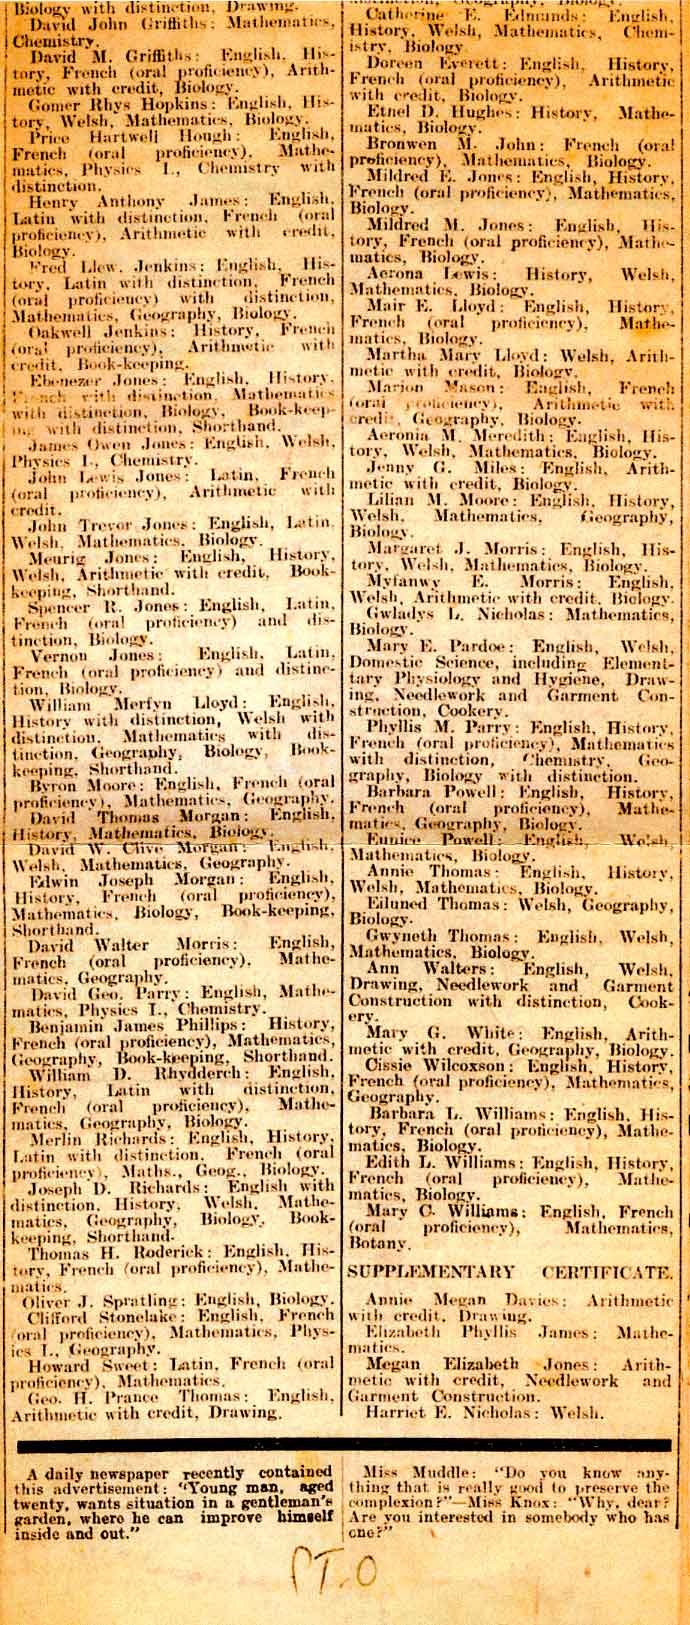 1930 Newspaper Cutting part 2